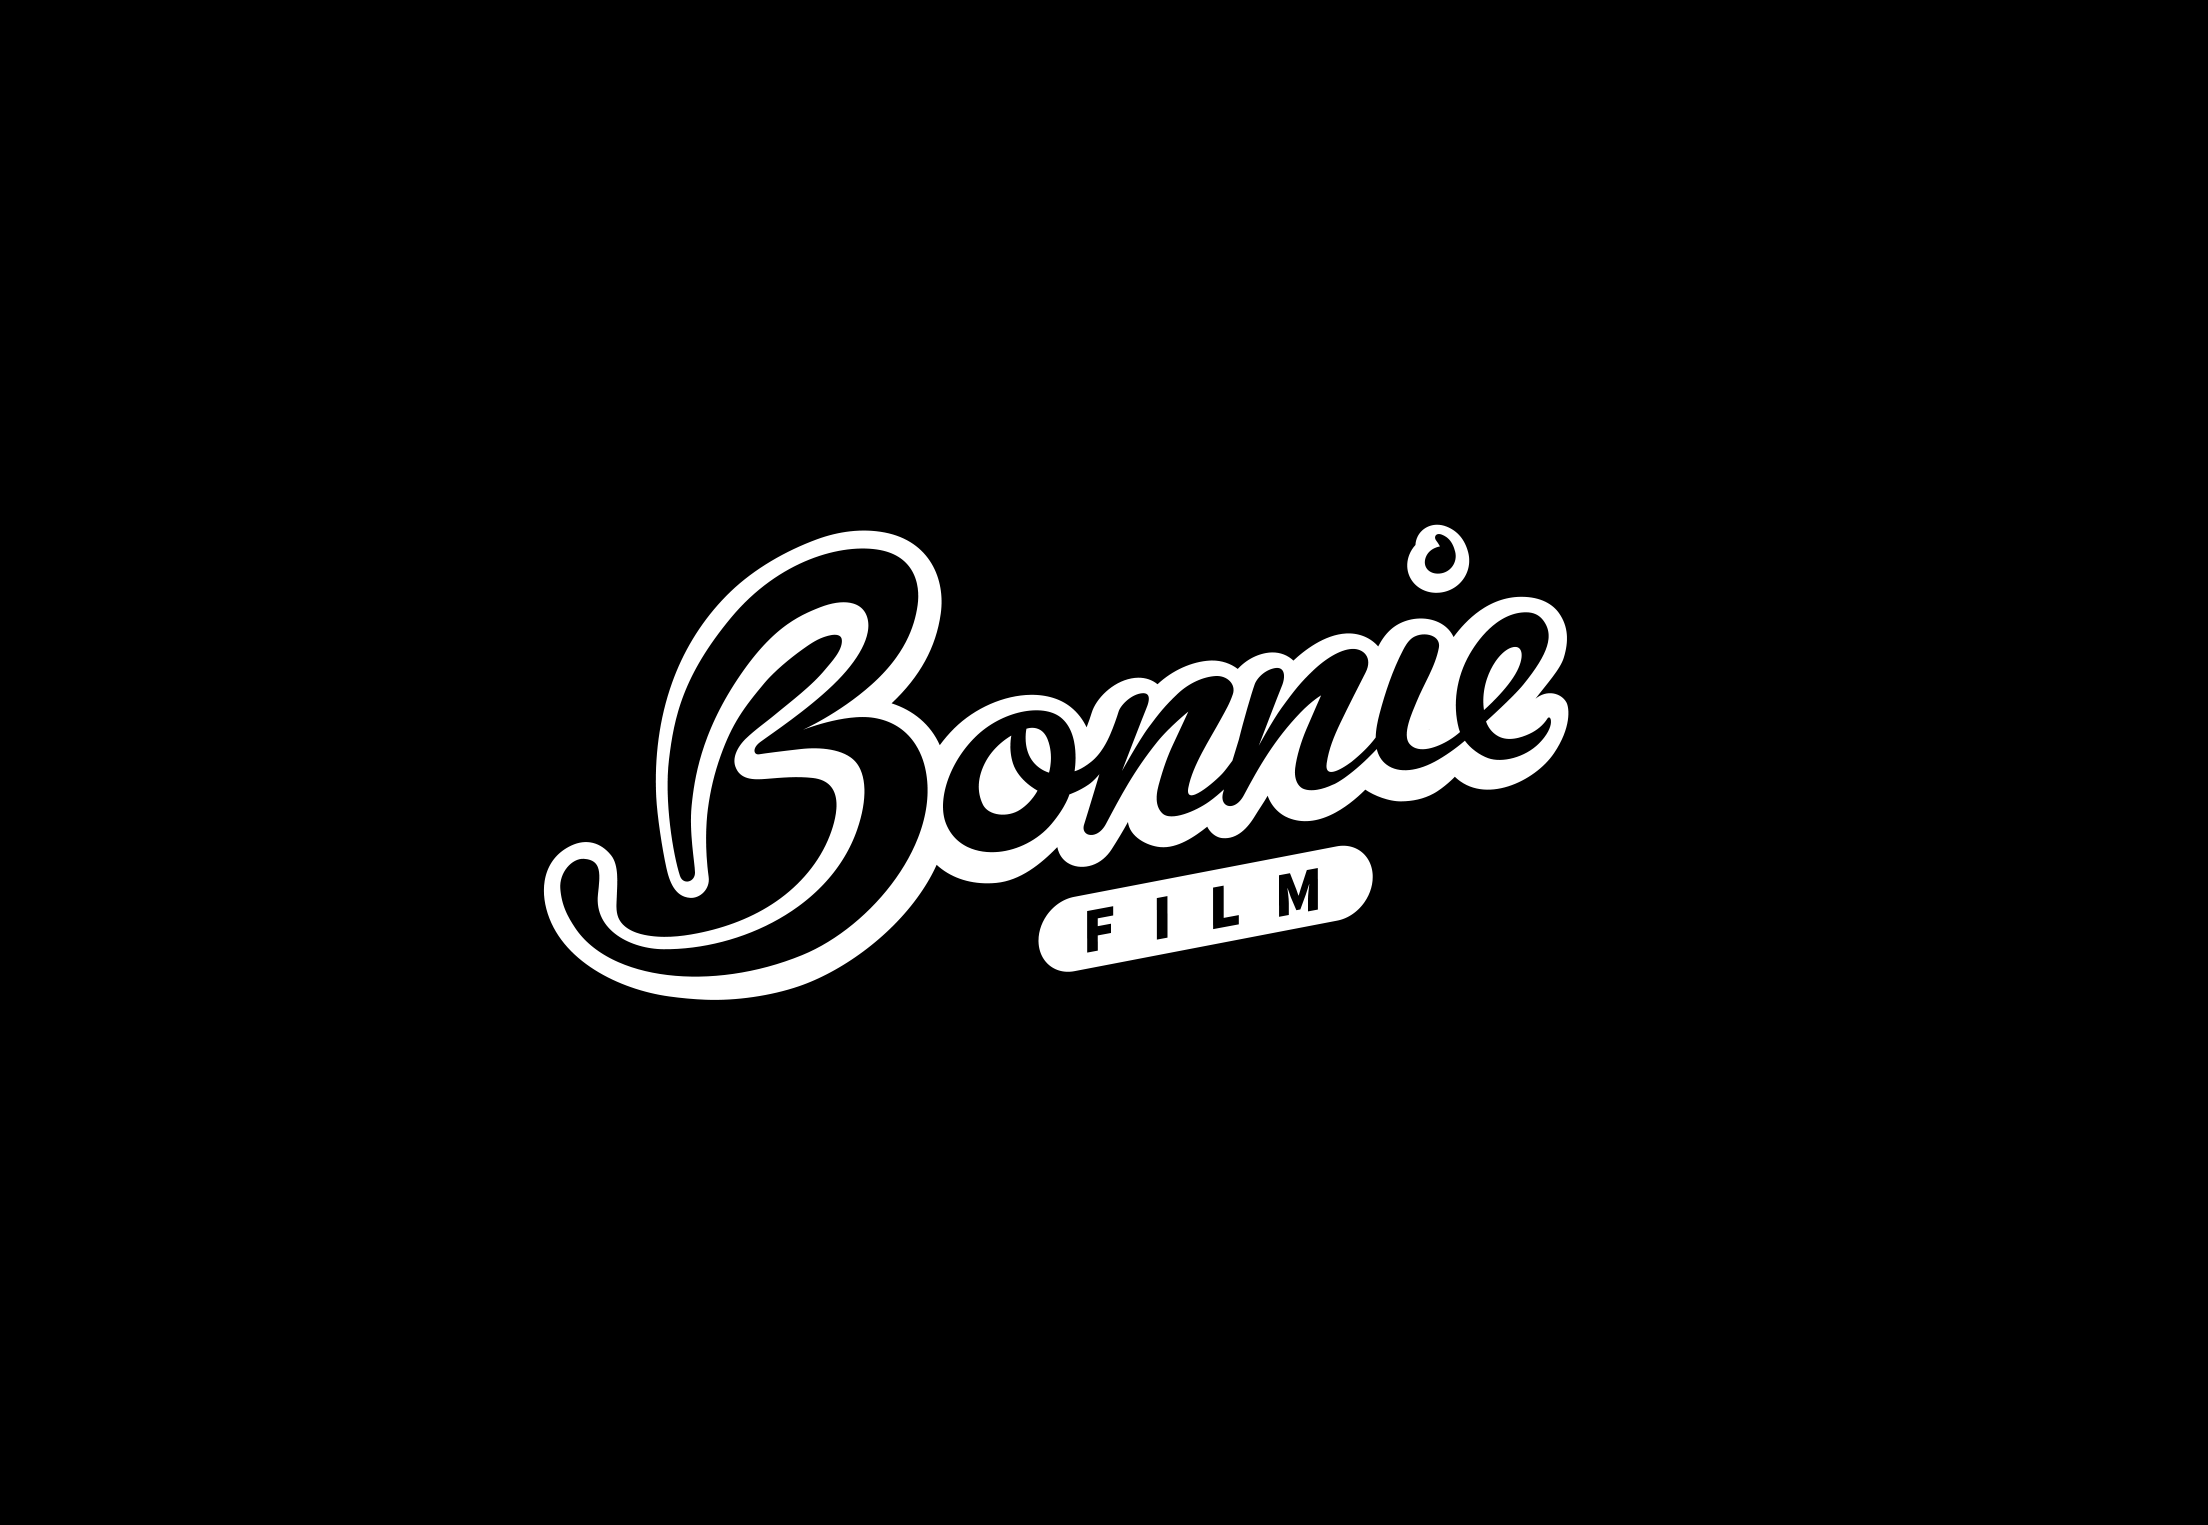 Bonnie Film logo design by Geoff Muskett